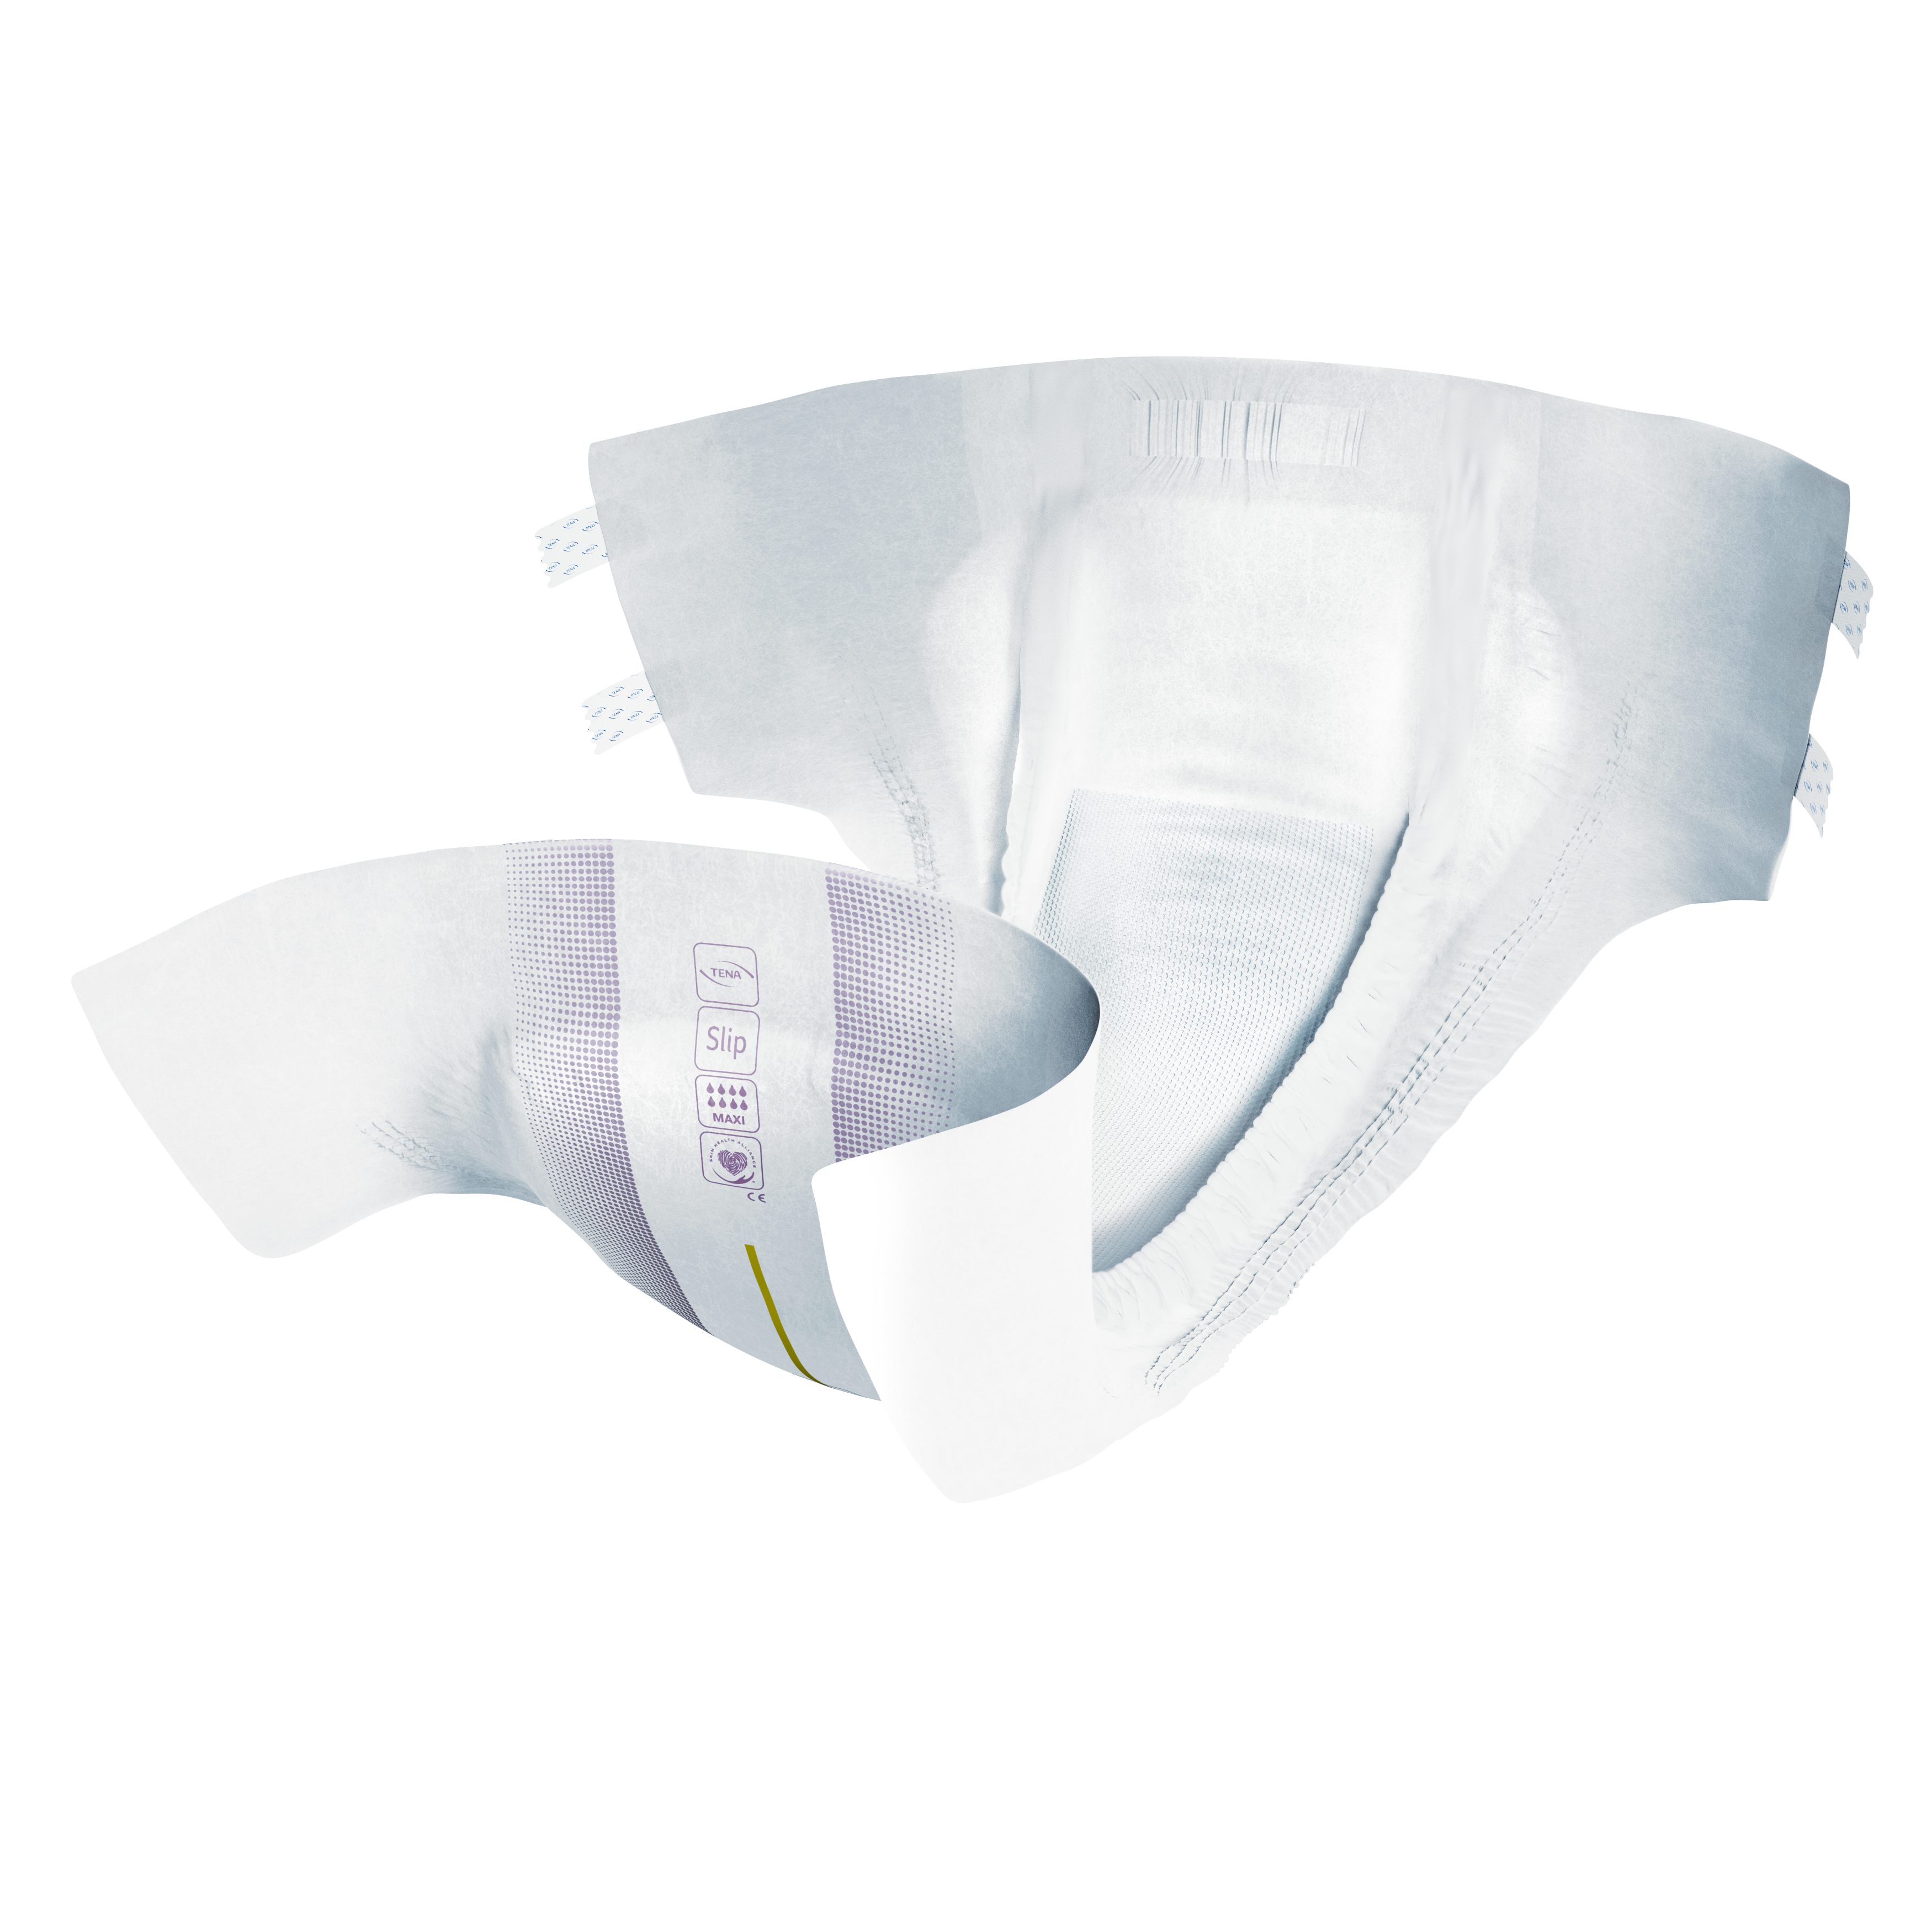 TENA ProSkin Slip Maxi – Absorberande vuxenblöja med trippelt skydd för läckagesäkerhet och en torr och mjuk känsla vid inkontinens